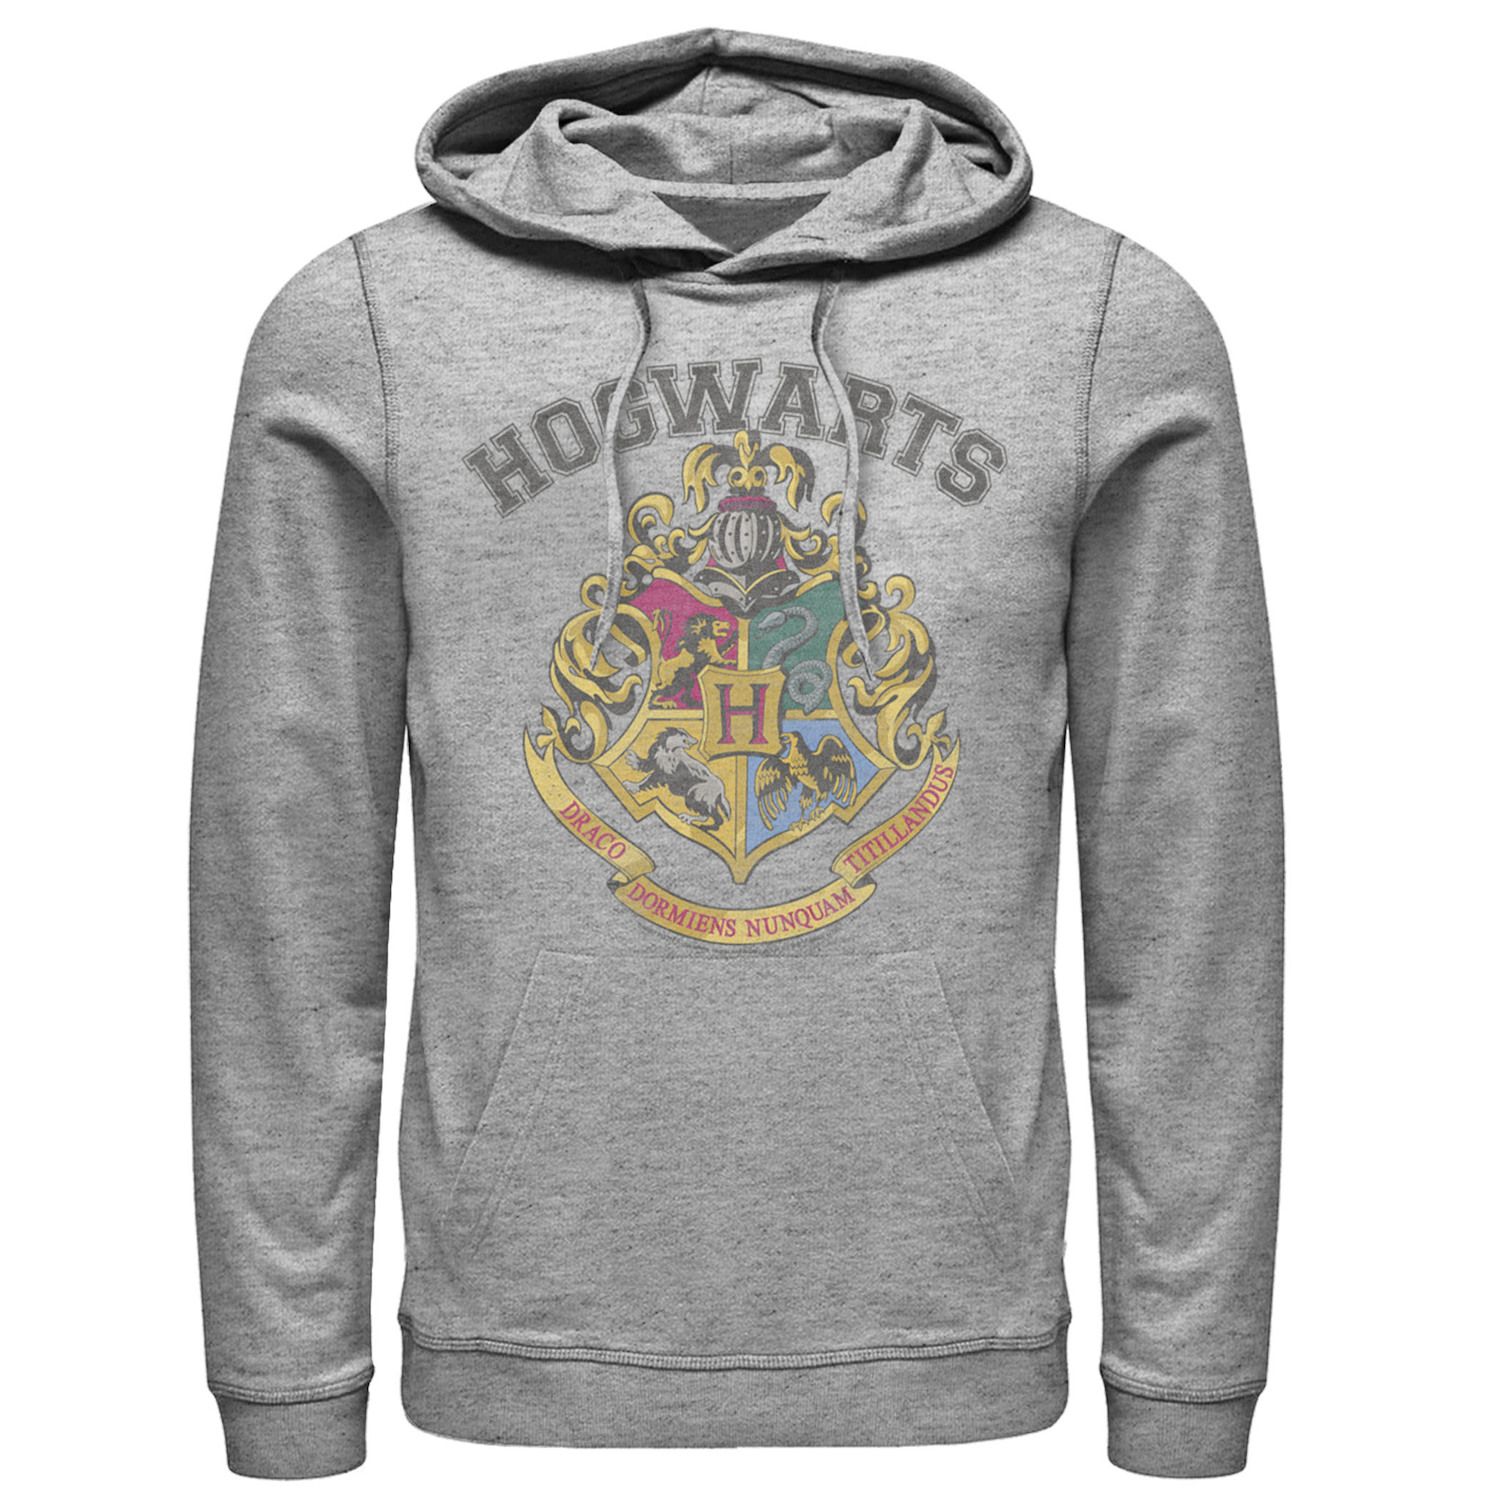 Image for Harry Potter Men's Vintage Logo Hoodie at Kohl's.